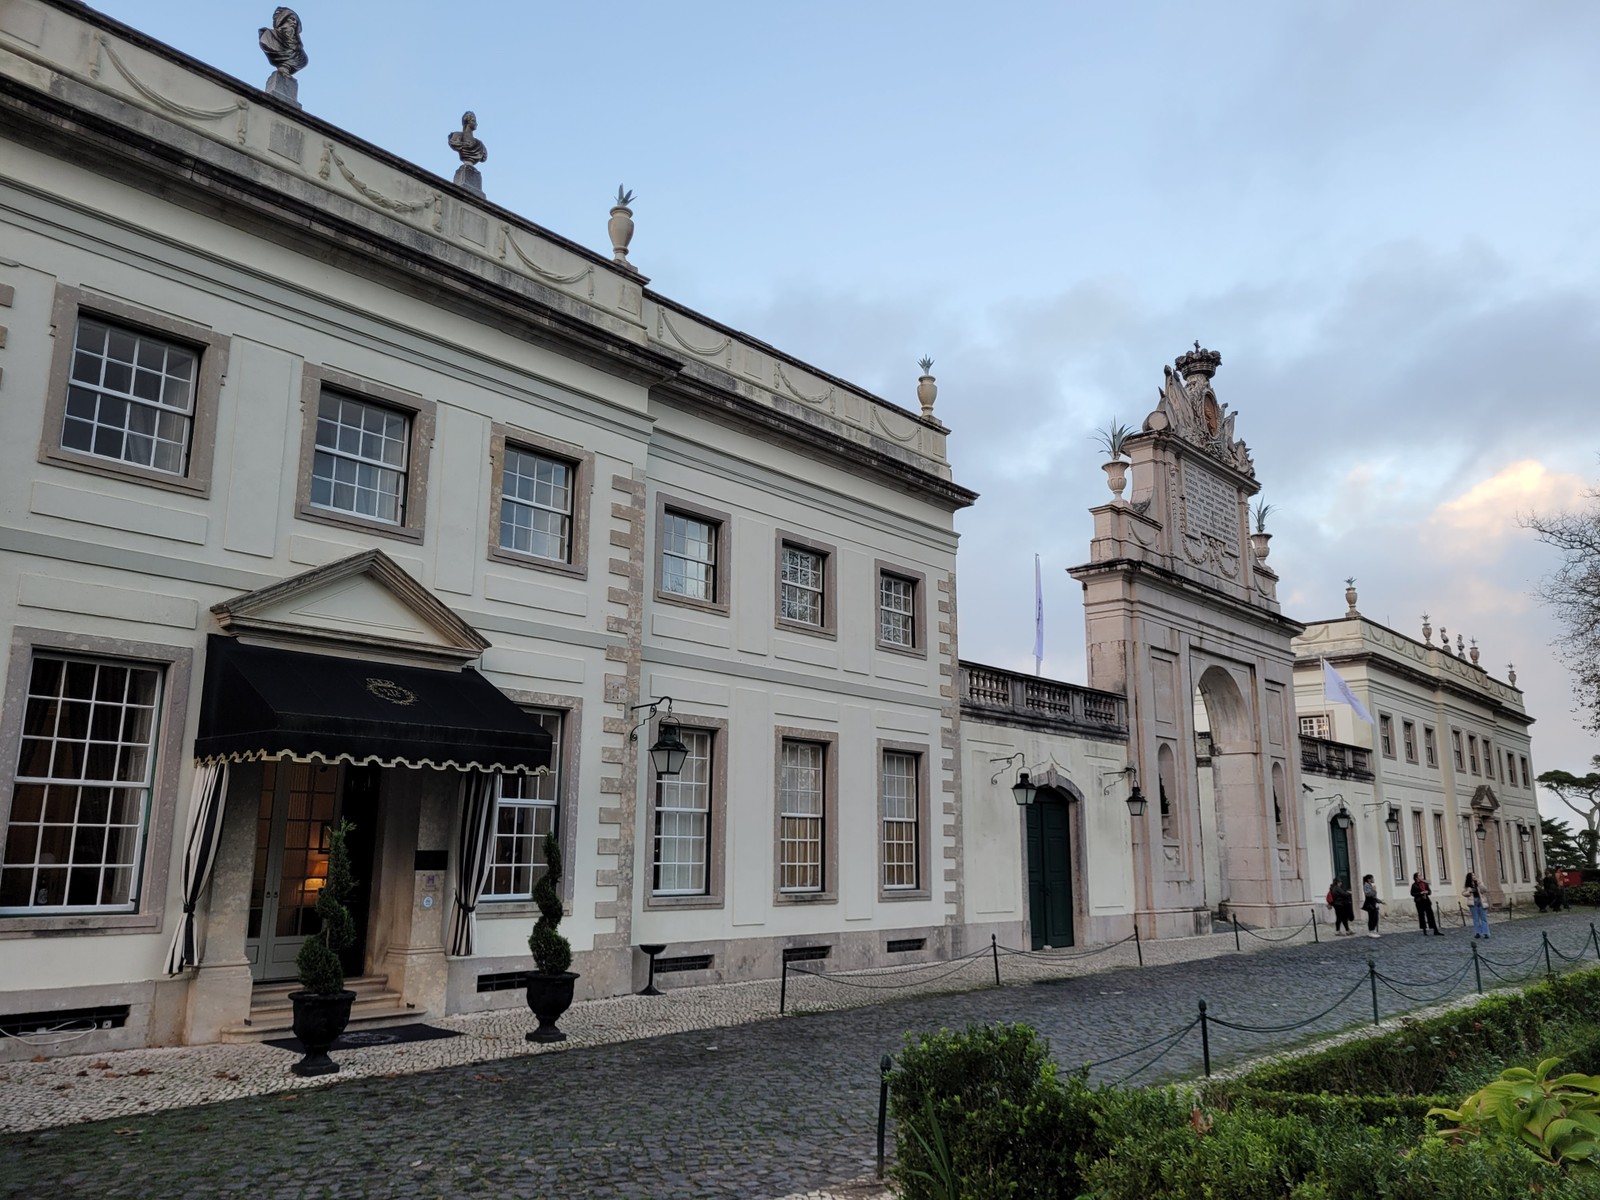 Fachada do Tivoli Palácio de Seteais, hotel de luxo em Sintra que funciona num palácio histórico do século XVIII — Foto: Eduardo Maia / O Globo